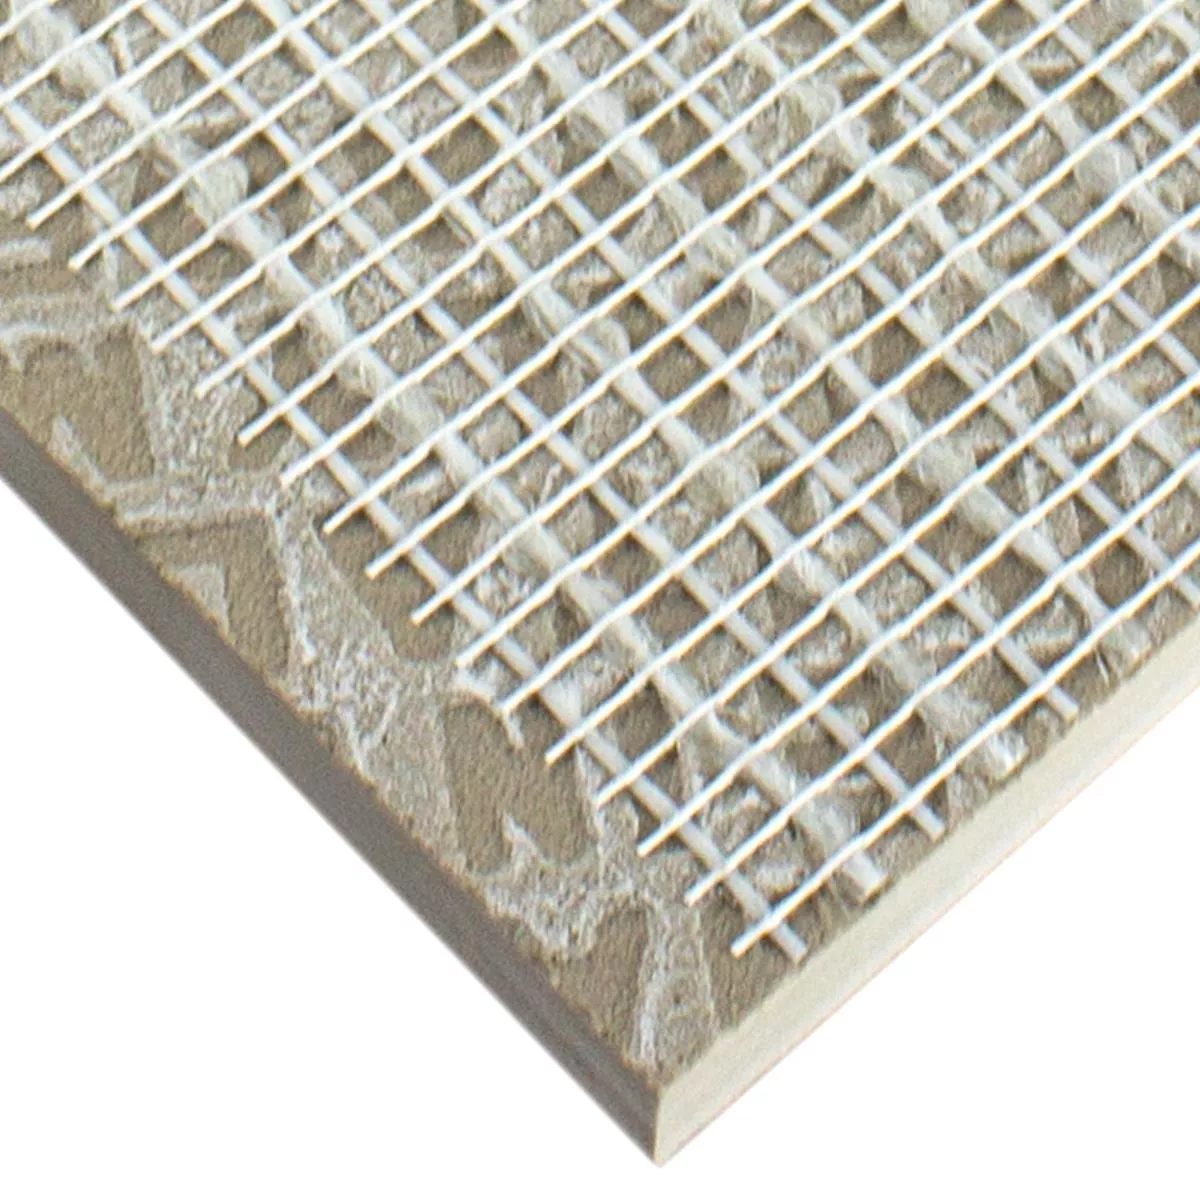 Sample Ceramic Mosaic Tiles Eylem Retro Optic Beige Q95